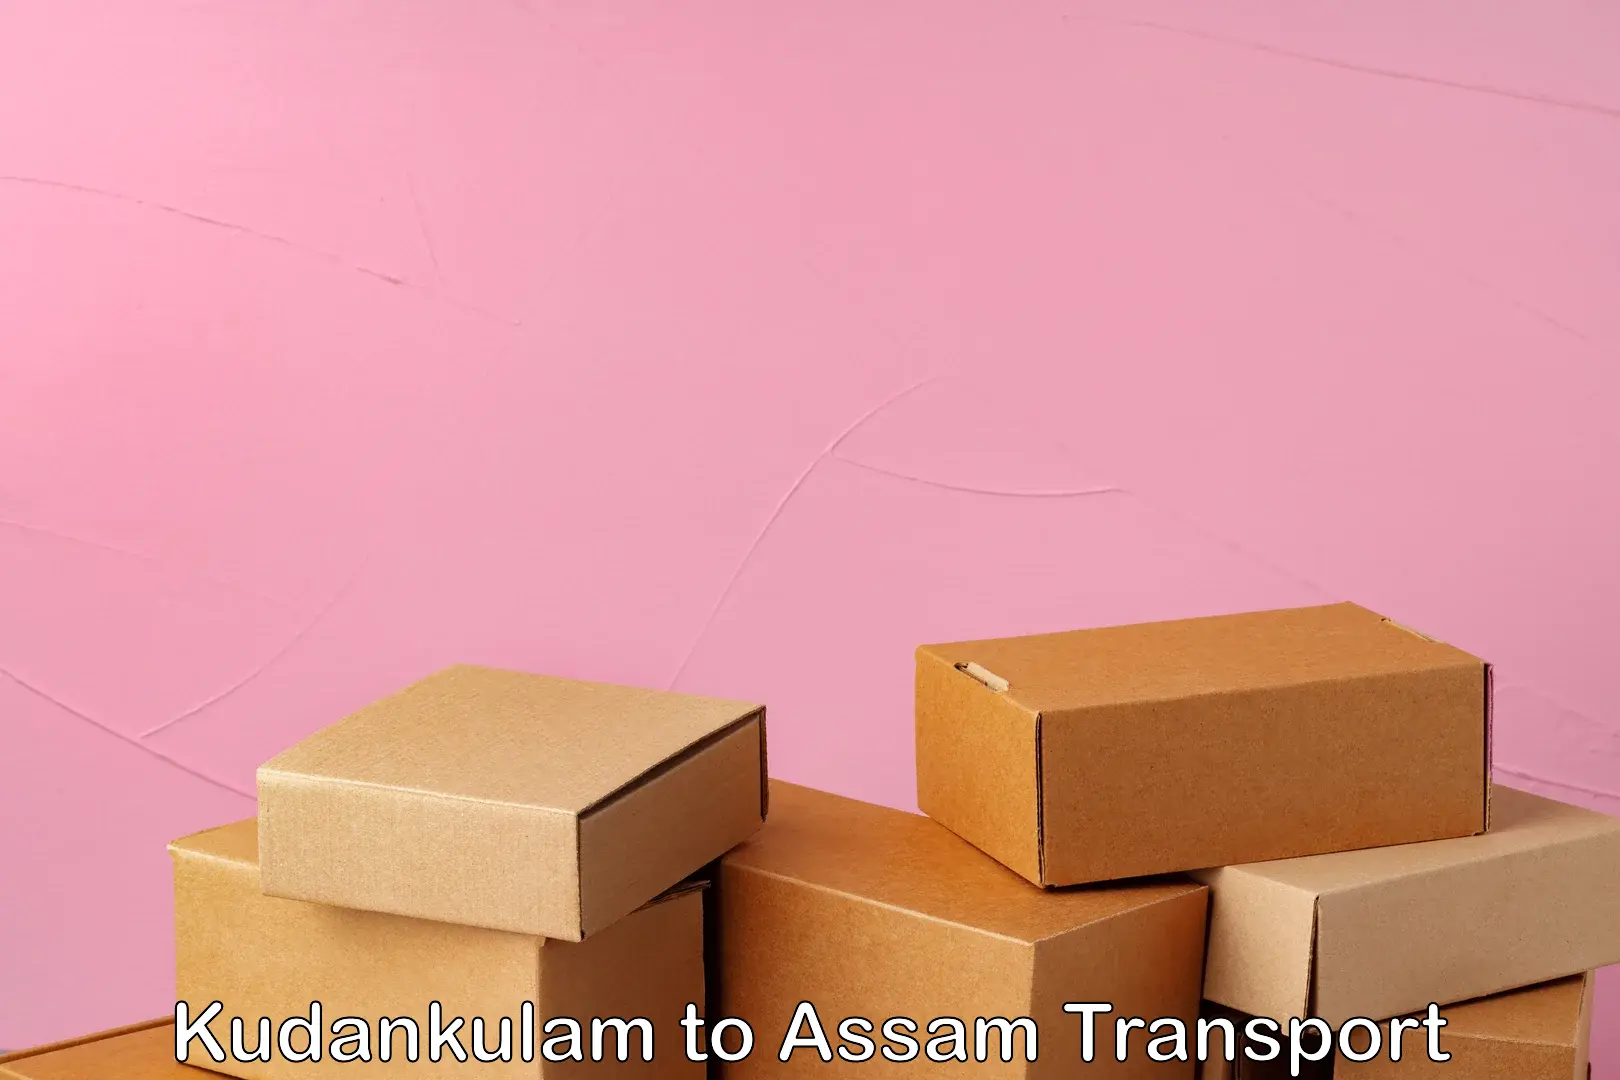 Sending bike to another city Kudankulam to Assam